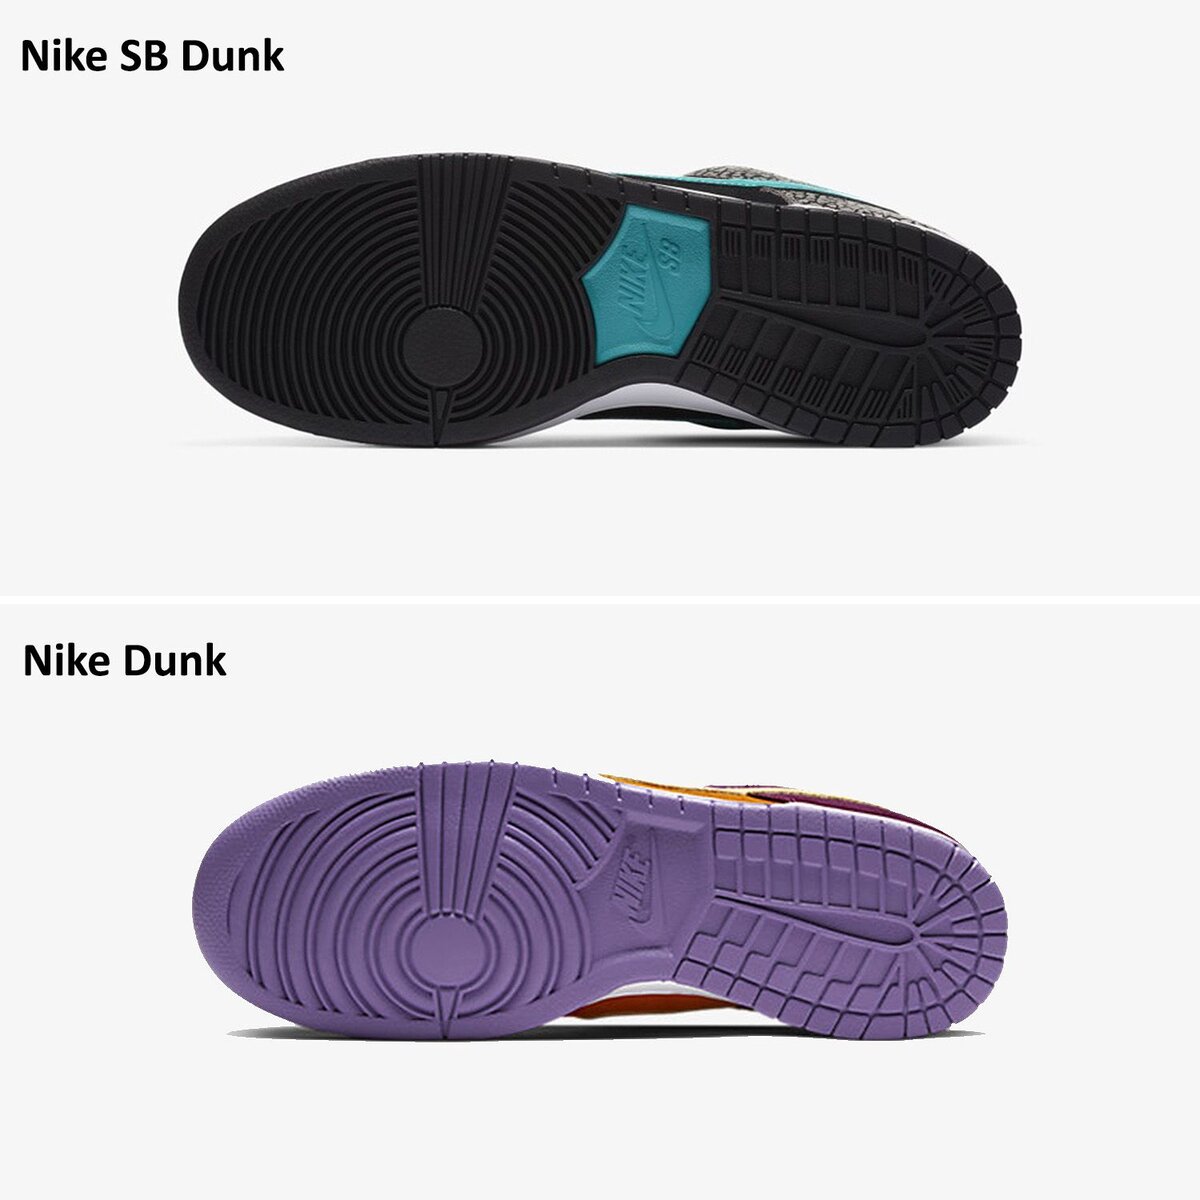  В этой статье мы рассмотрим различия между моделями Nike Dunk и Nike SB Dunk, чтобы помочь вам сделать выбор между ними.-2